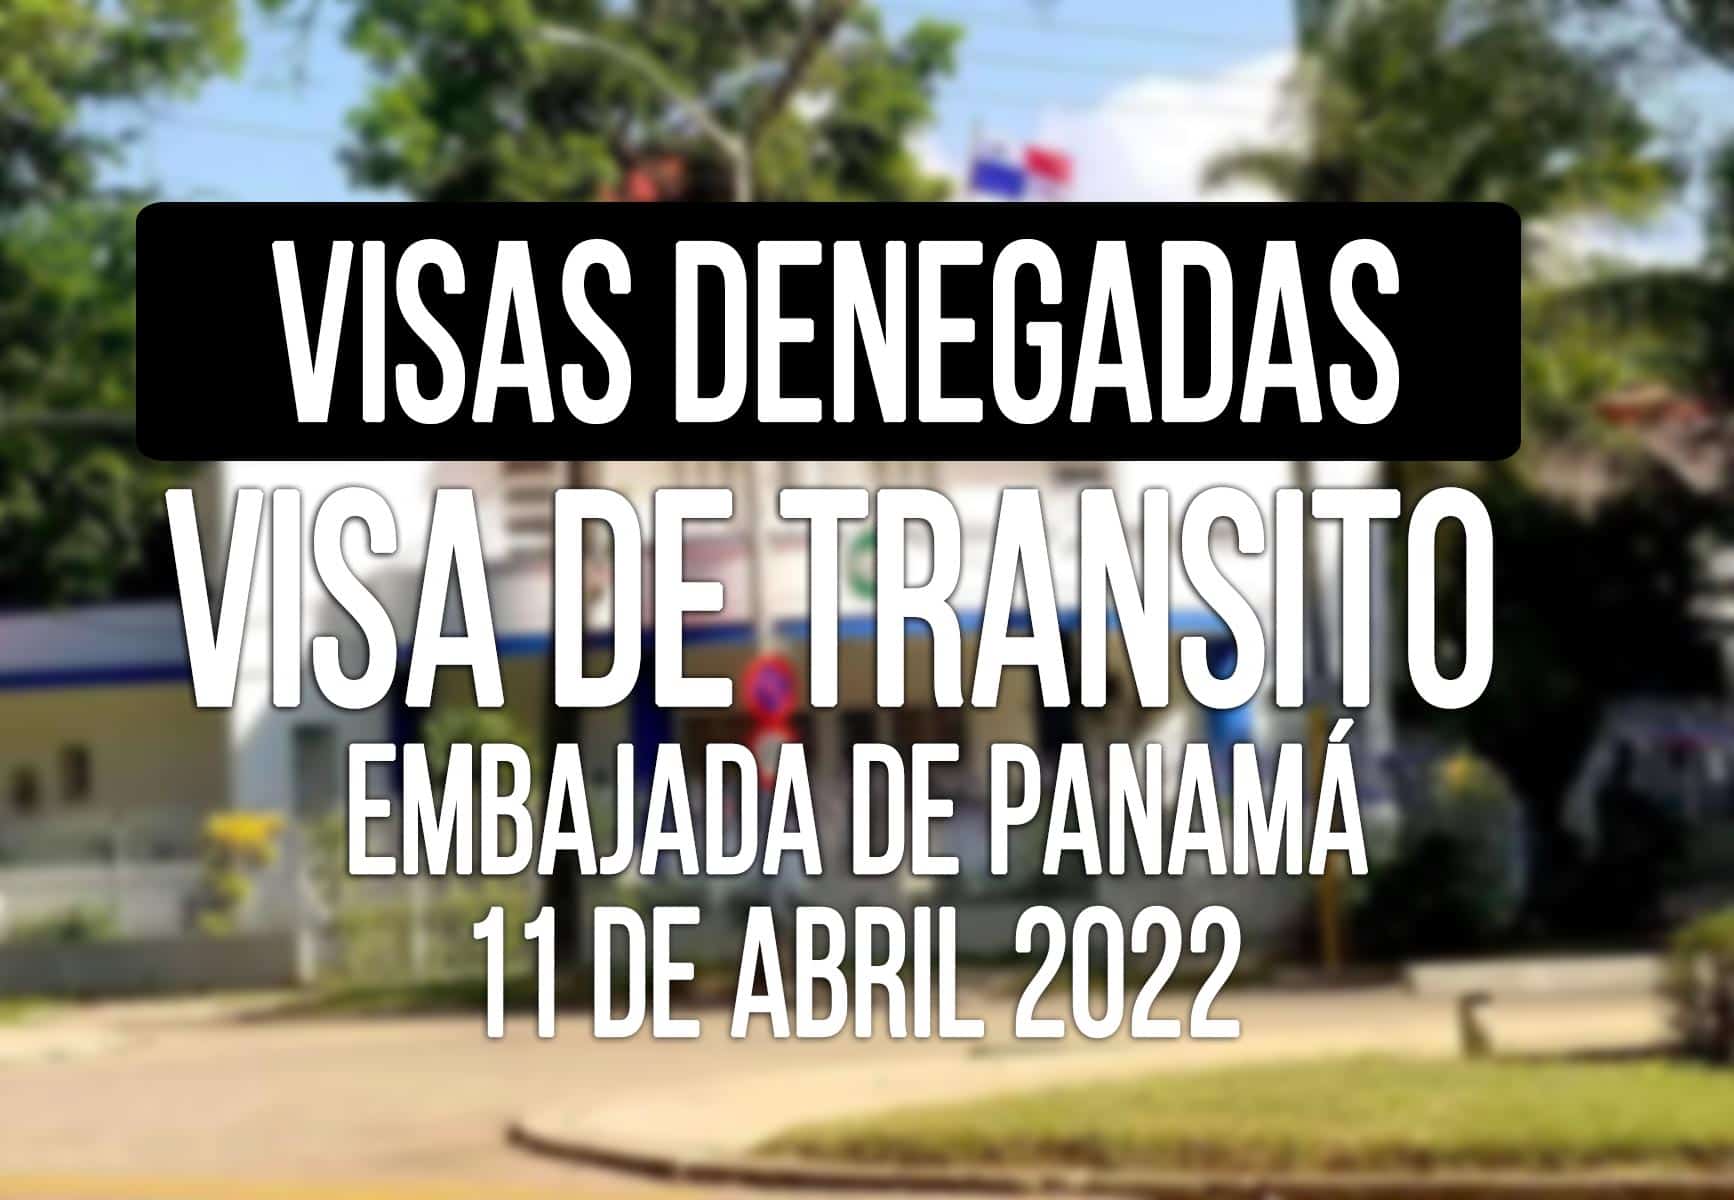 visa de transito panama negadas cubanos